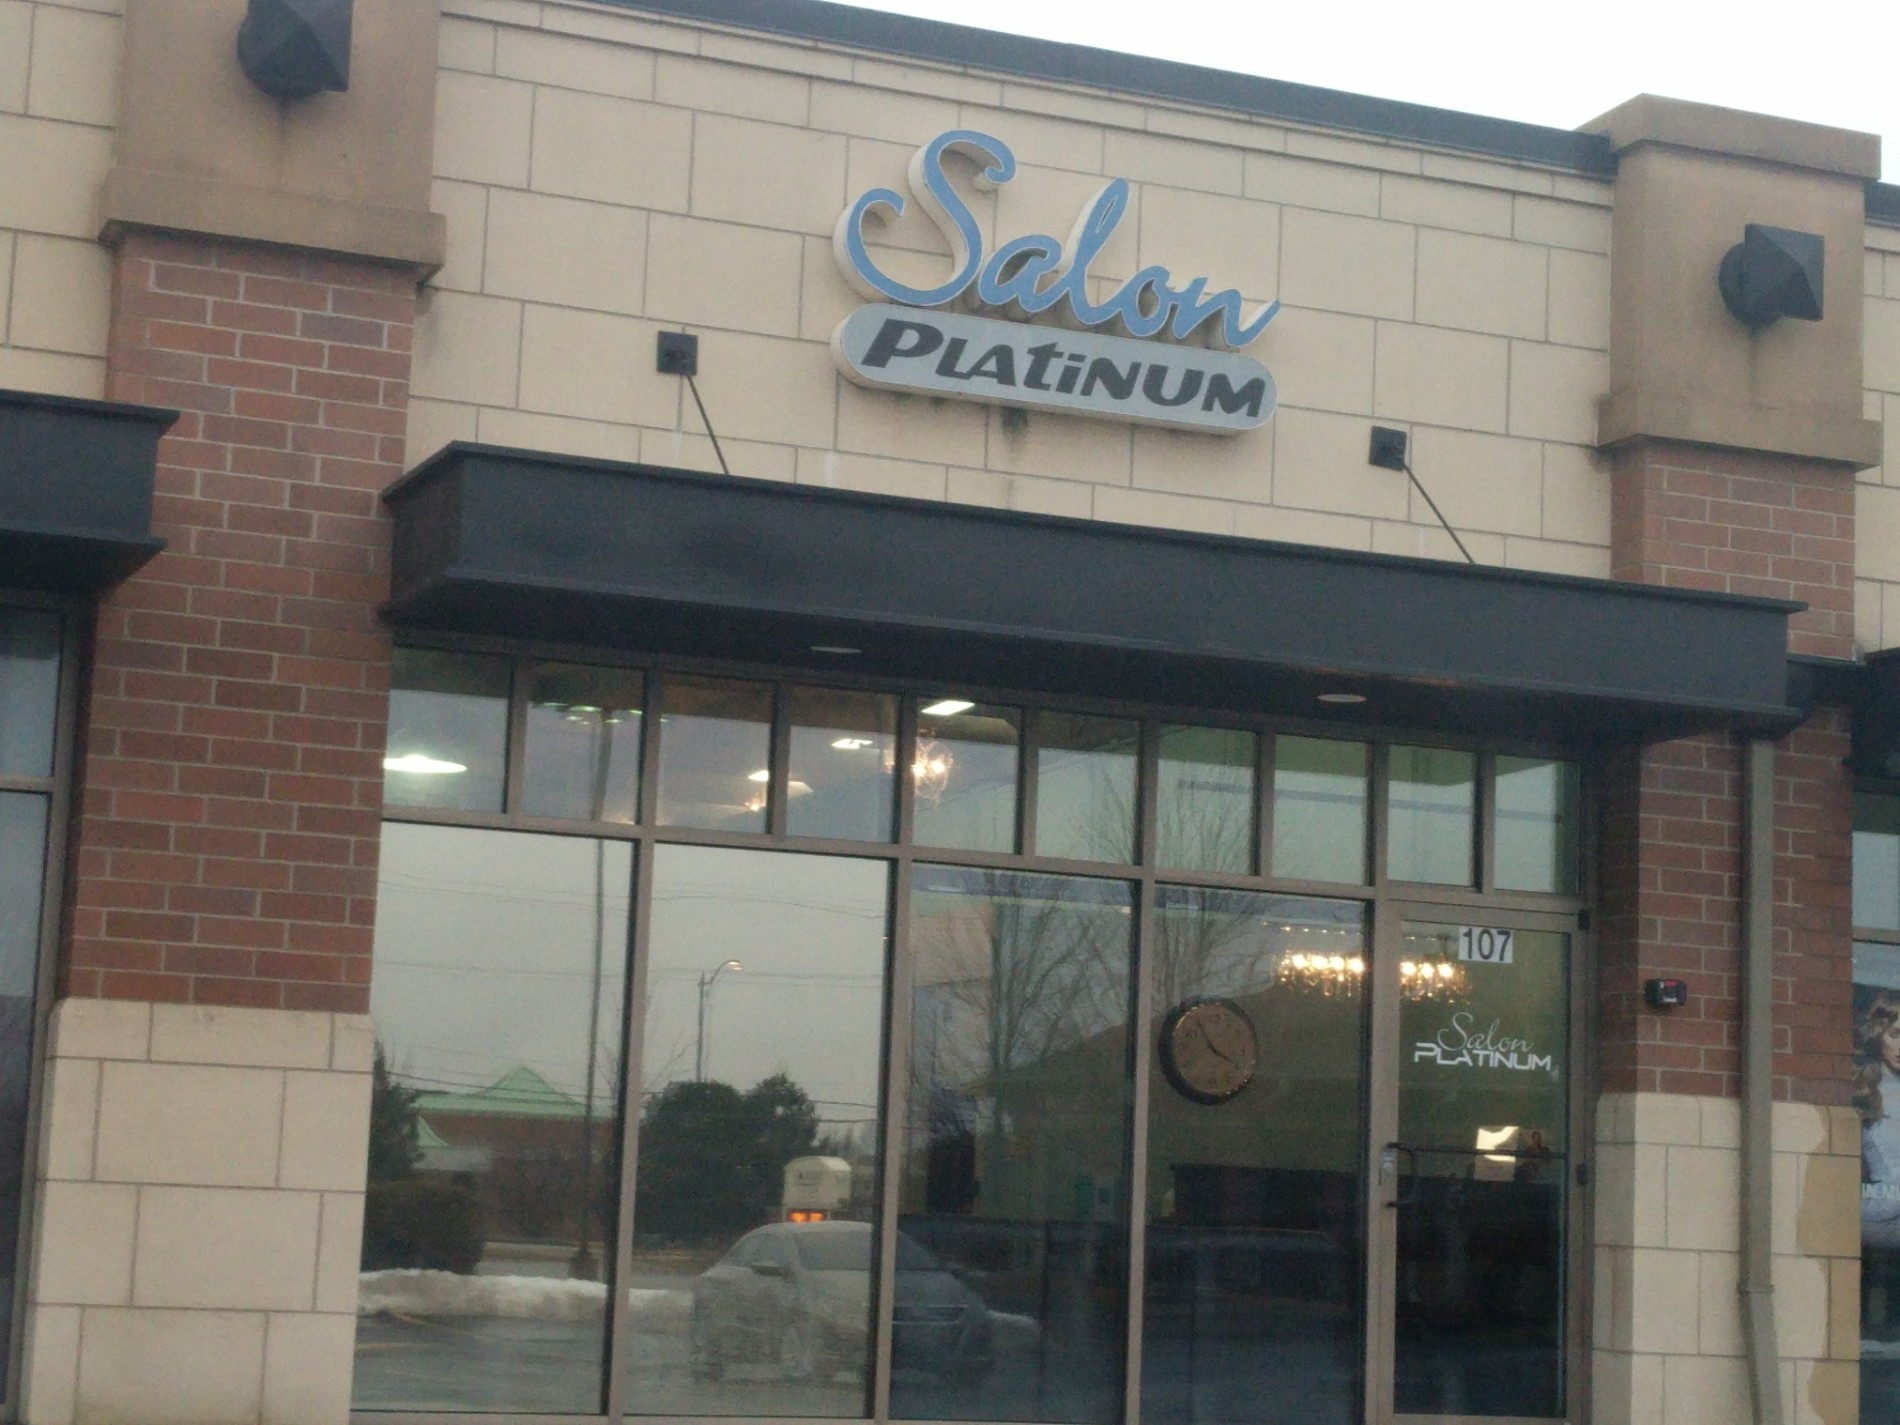 Salon Platinum LLC